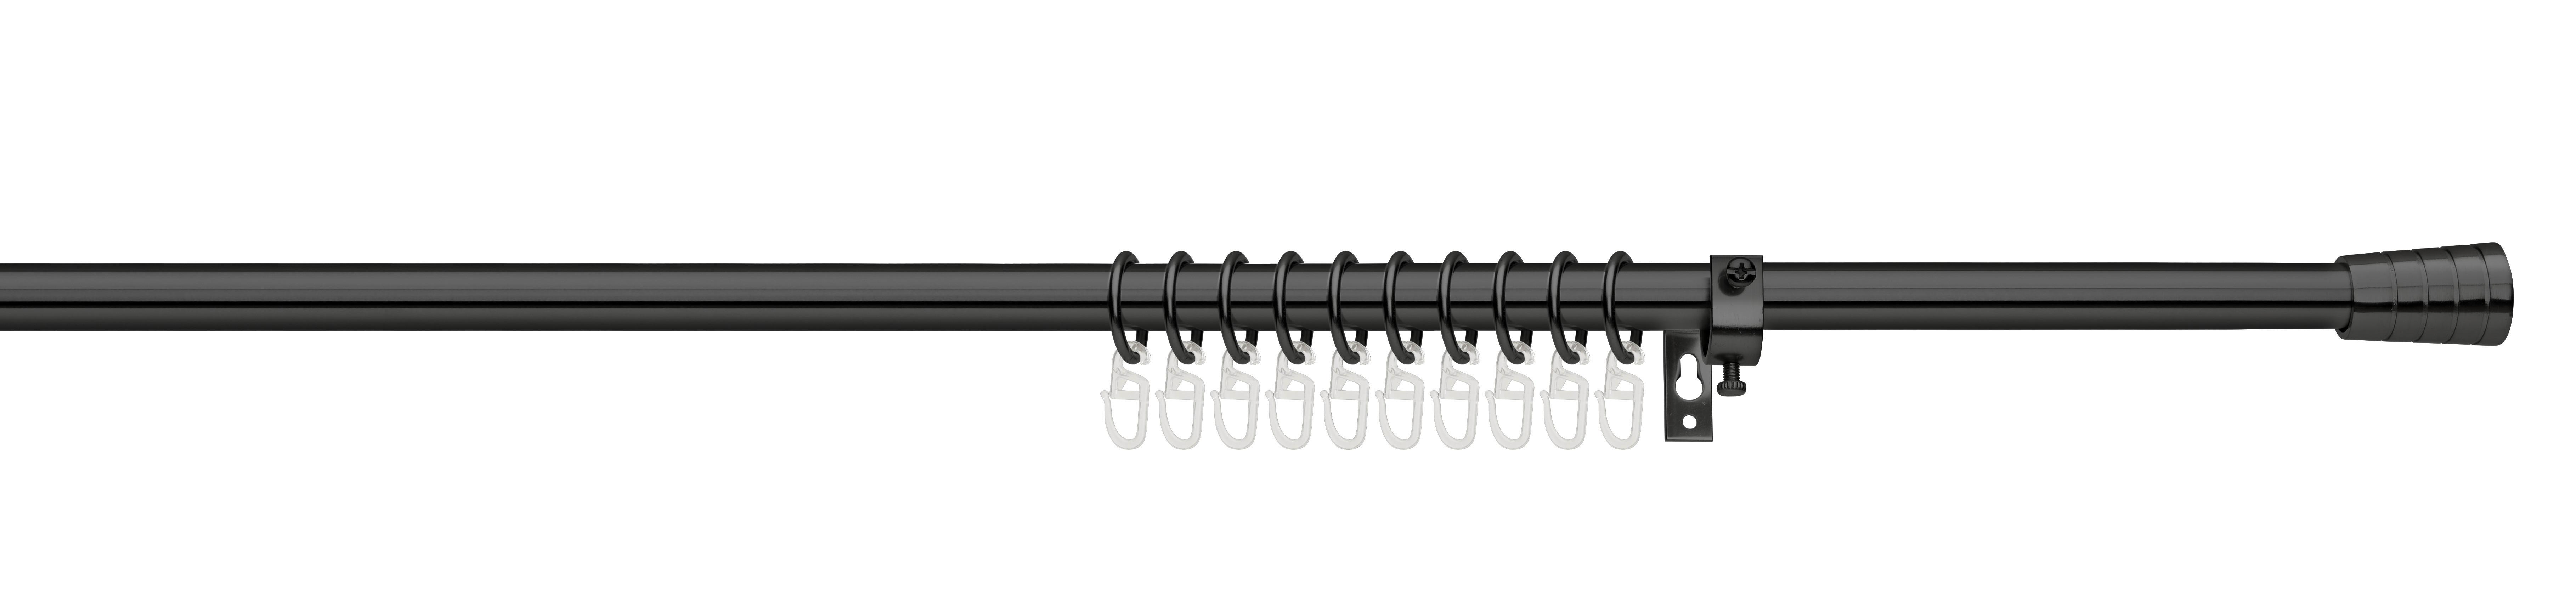 Rundstangengarnitur Cap ca. 130-240cm - Schwarz, Kunststoff/Metall (130-240cm) - Modern Living